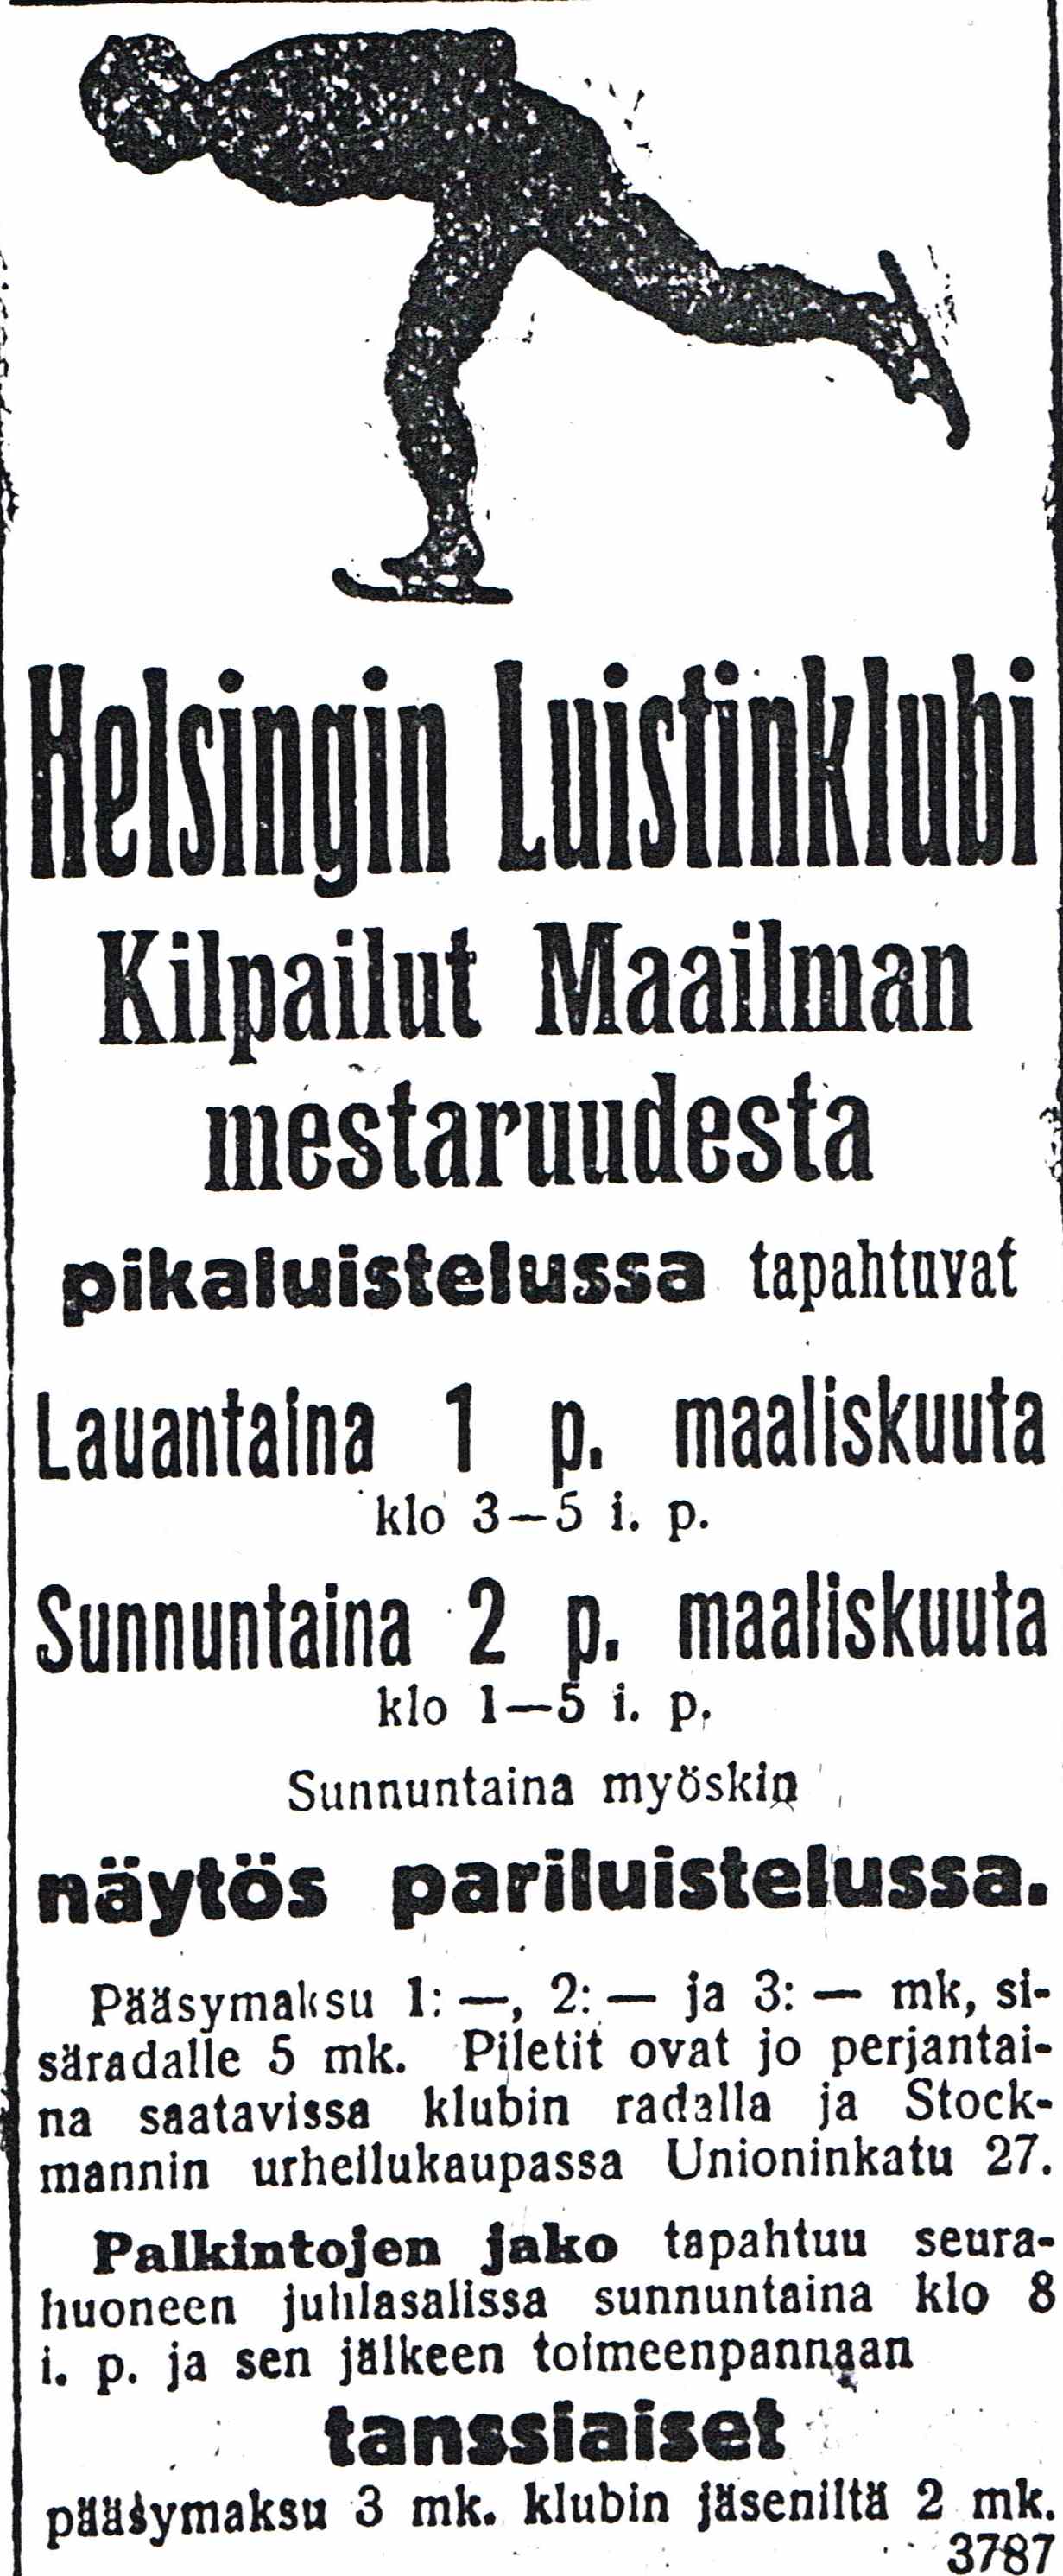 Annonse, VM 1913, fra Helsingin Sanomat